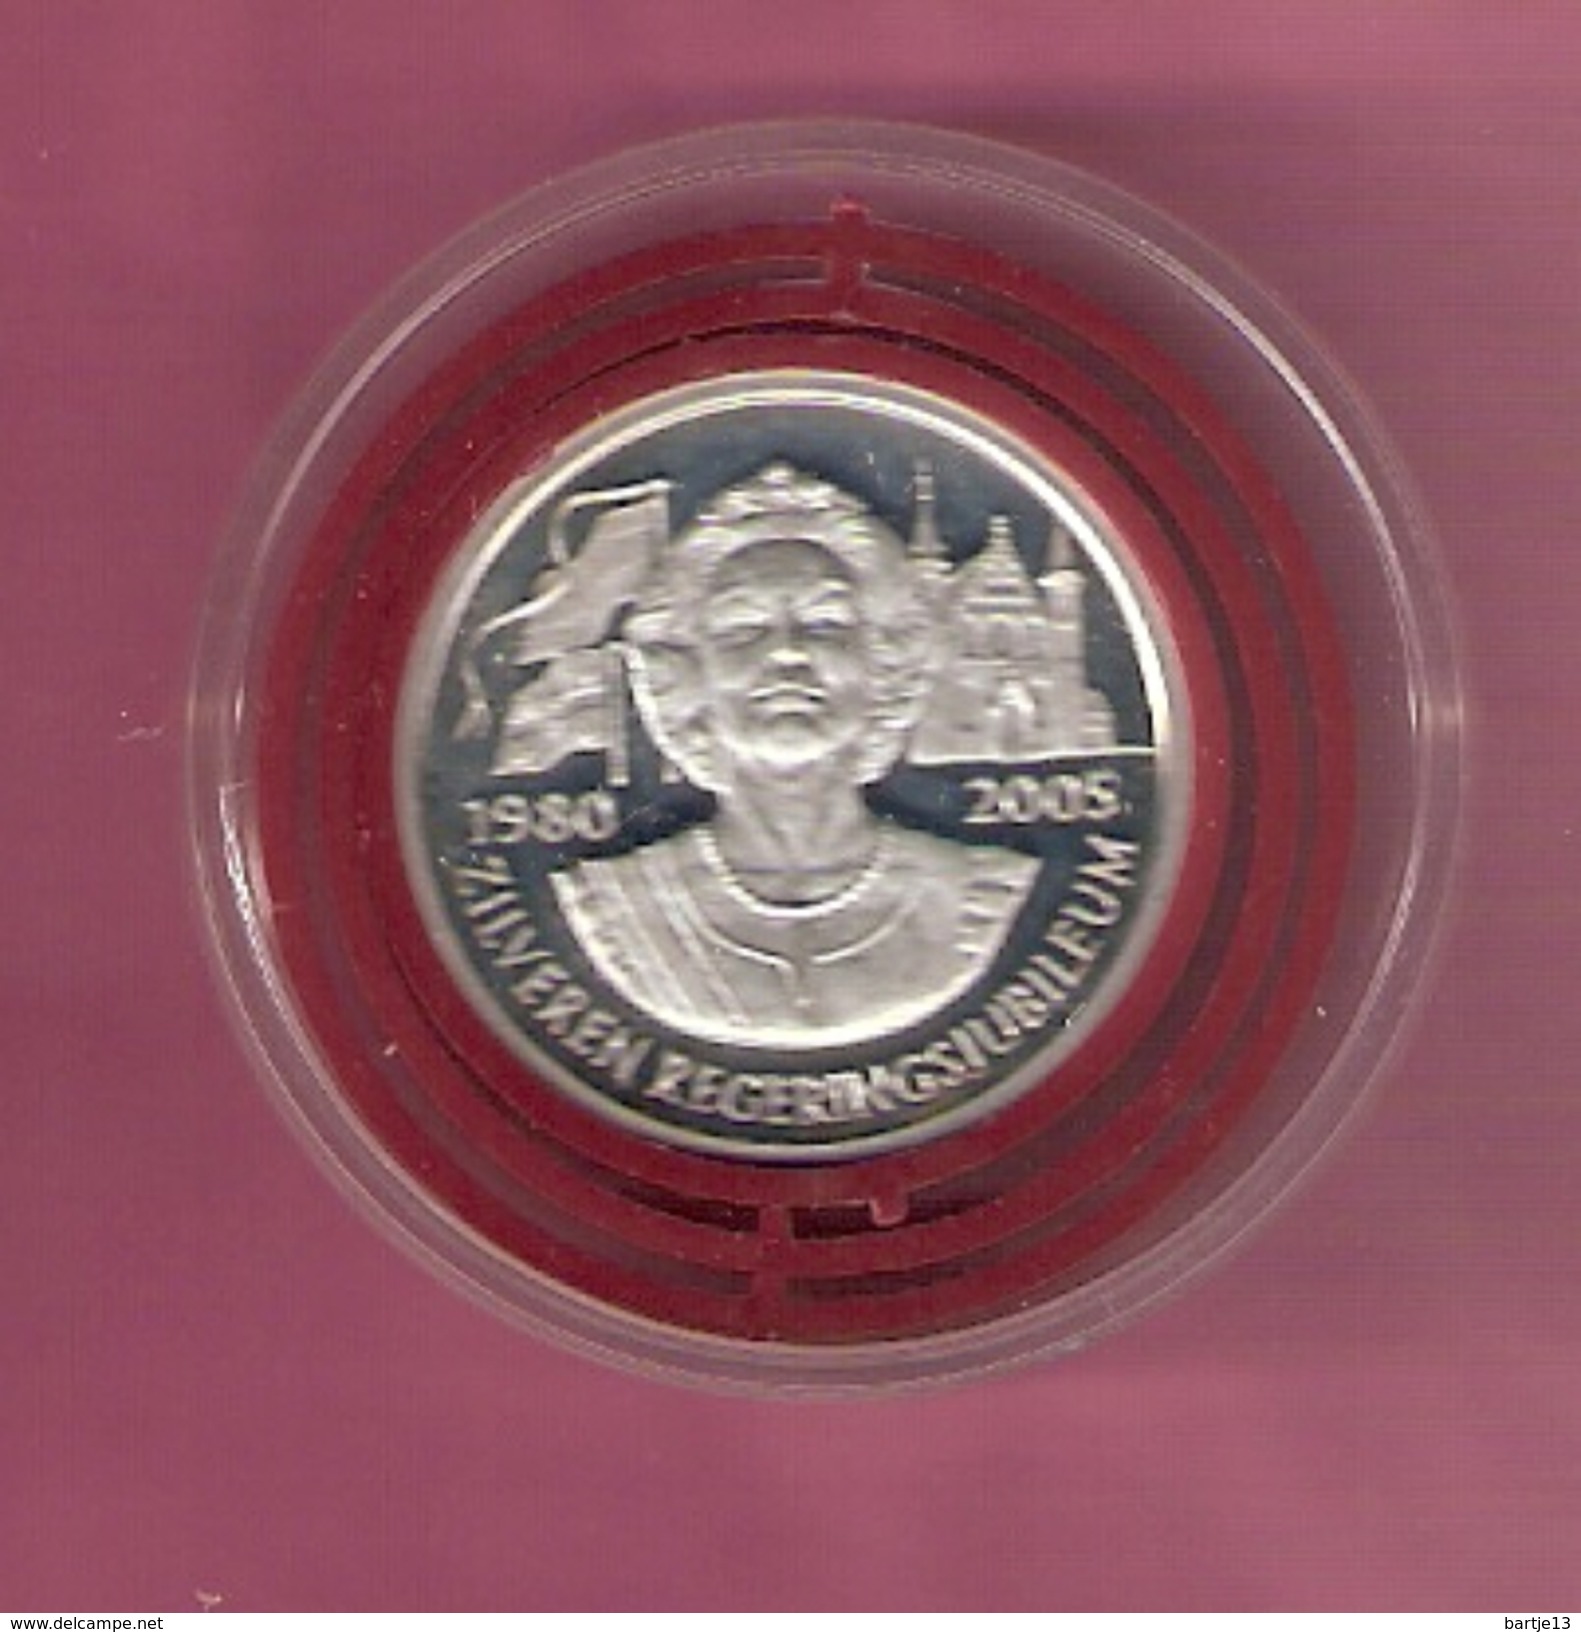 NEDERLAND SILVER MEDAL 2005 BEATRIX 25 YEAR QUEEN - Pièces écrasées (Elongated Coins)